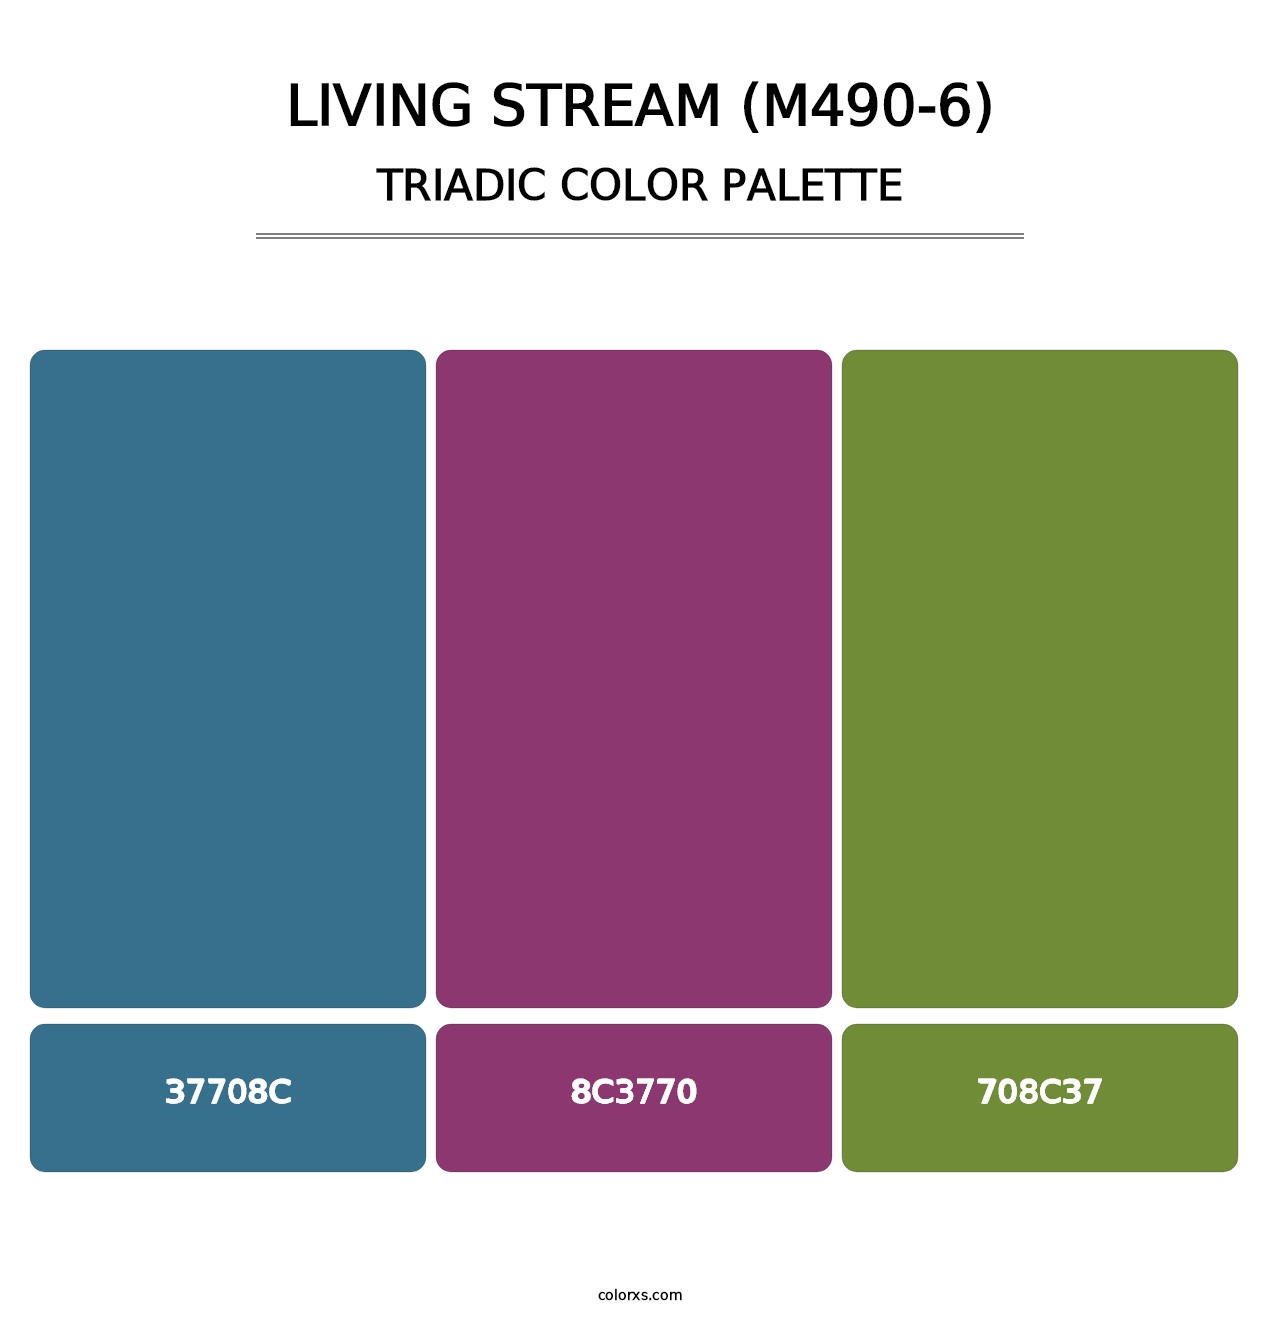 Living Stream (M490-6) - Triadic Color Palette